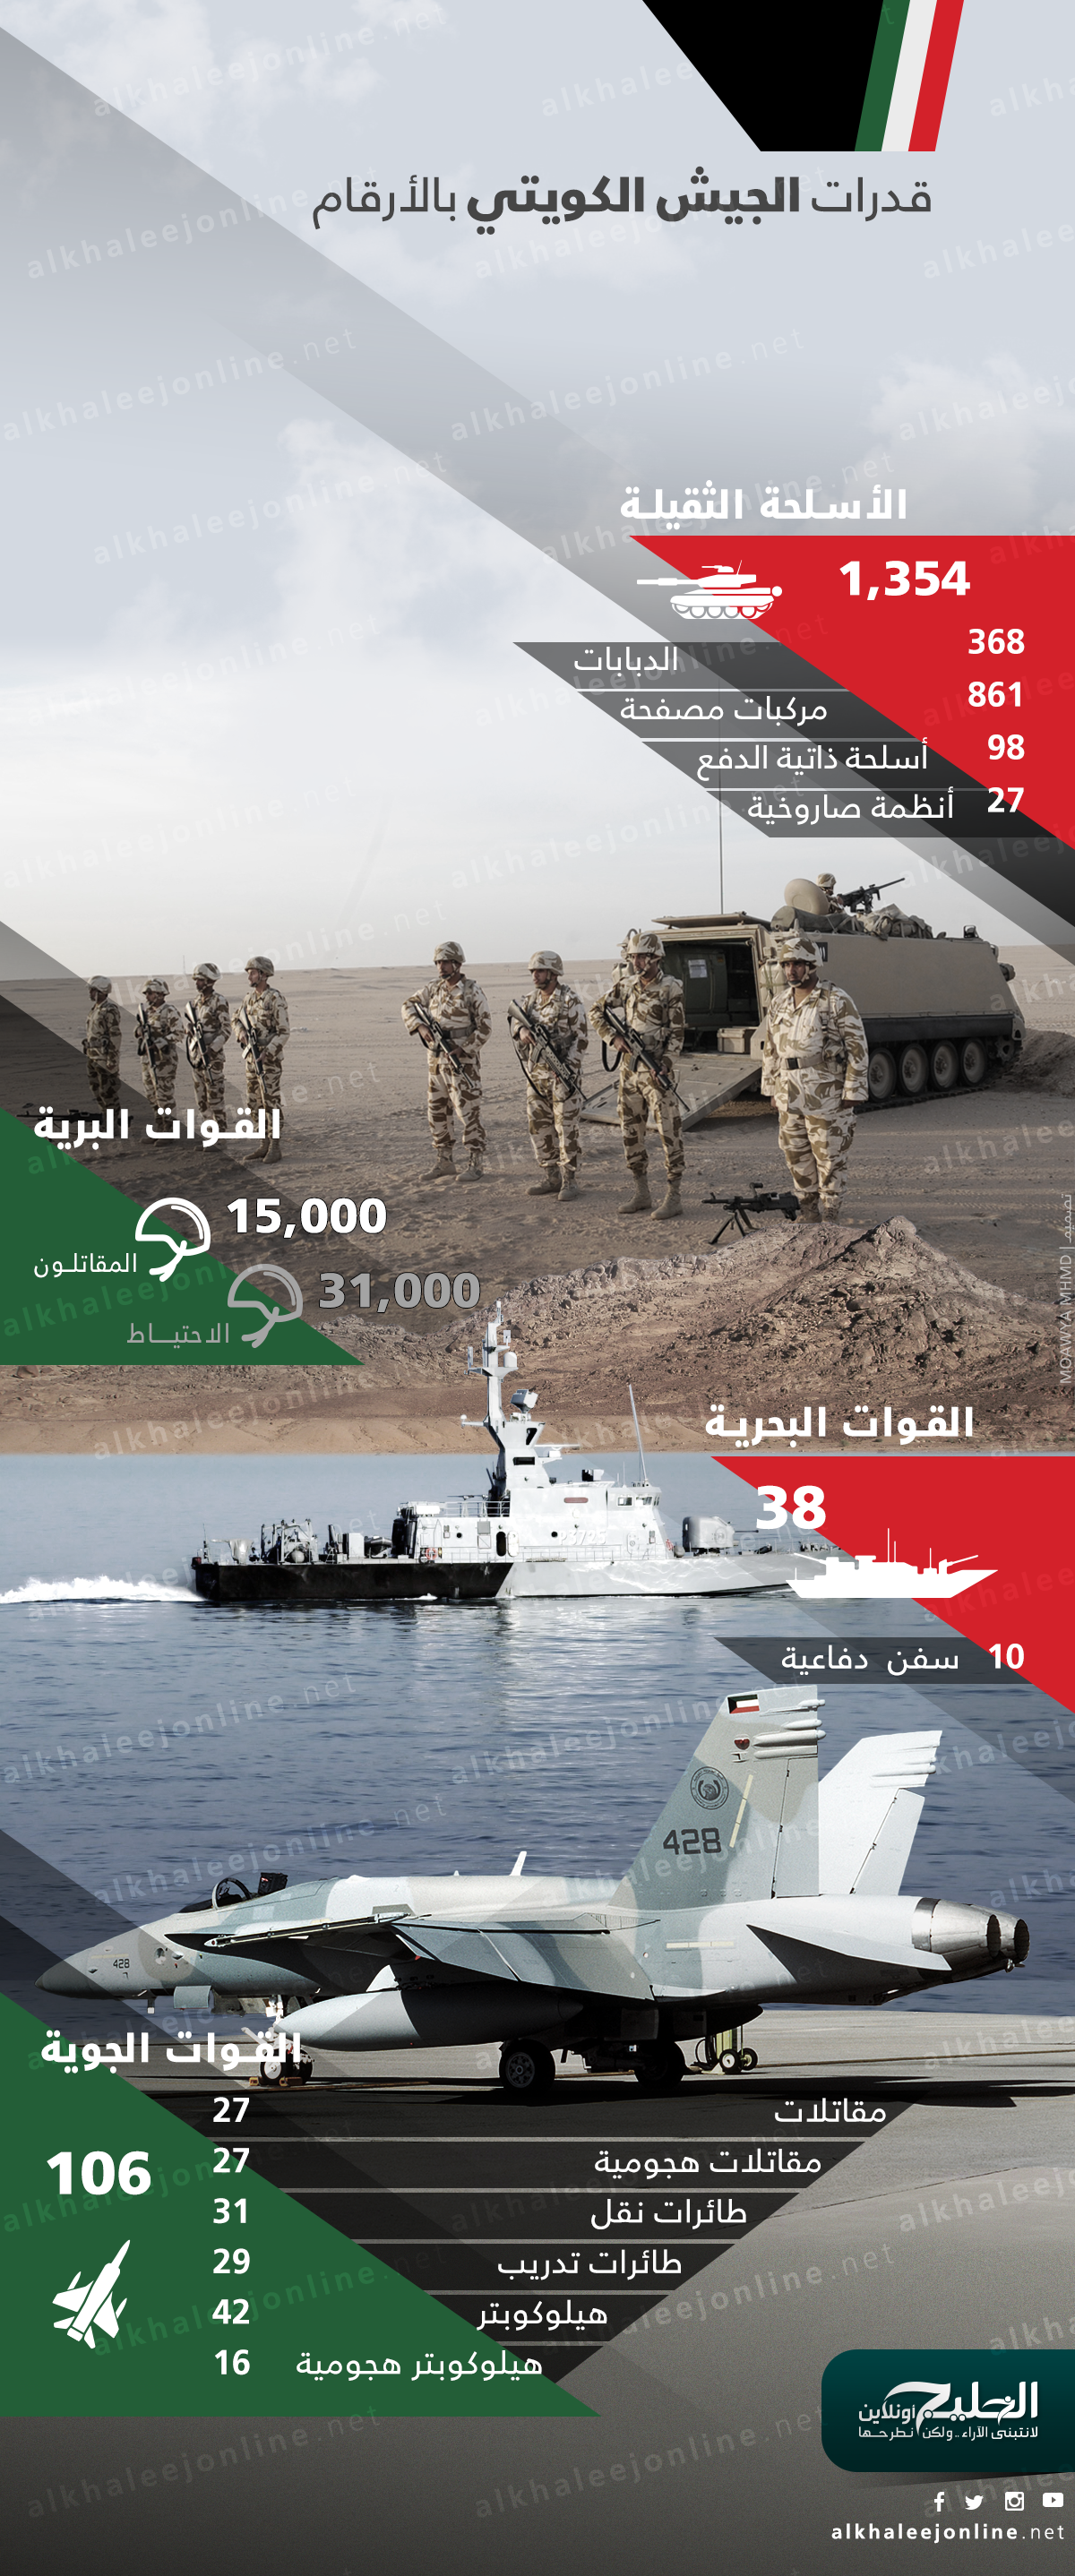 إنفوجرافيك.. تعرف على القدرات العسكرية للجيش الكويتي 23240577550_7e184aff14_o